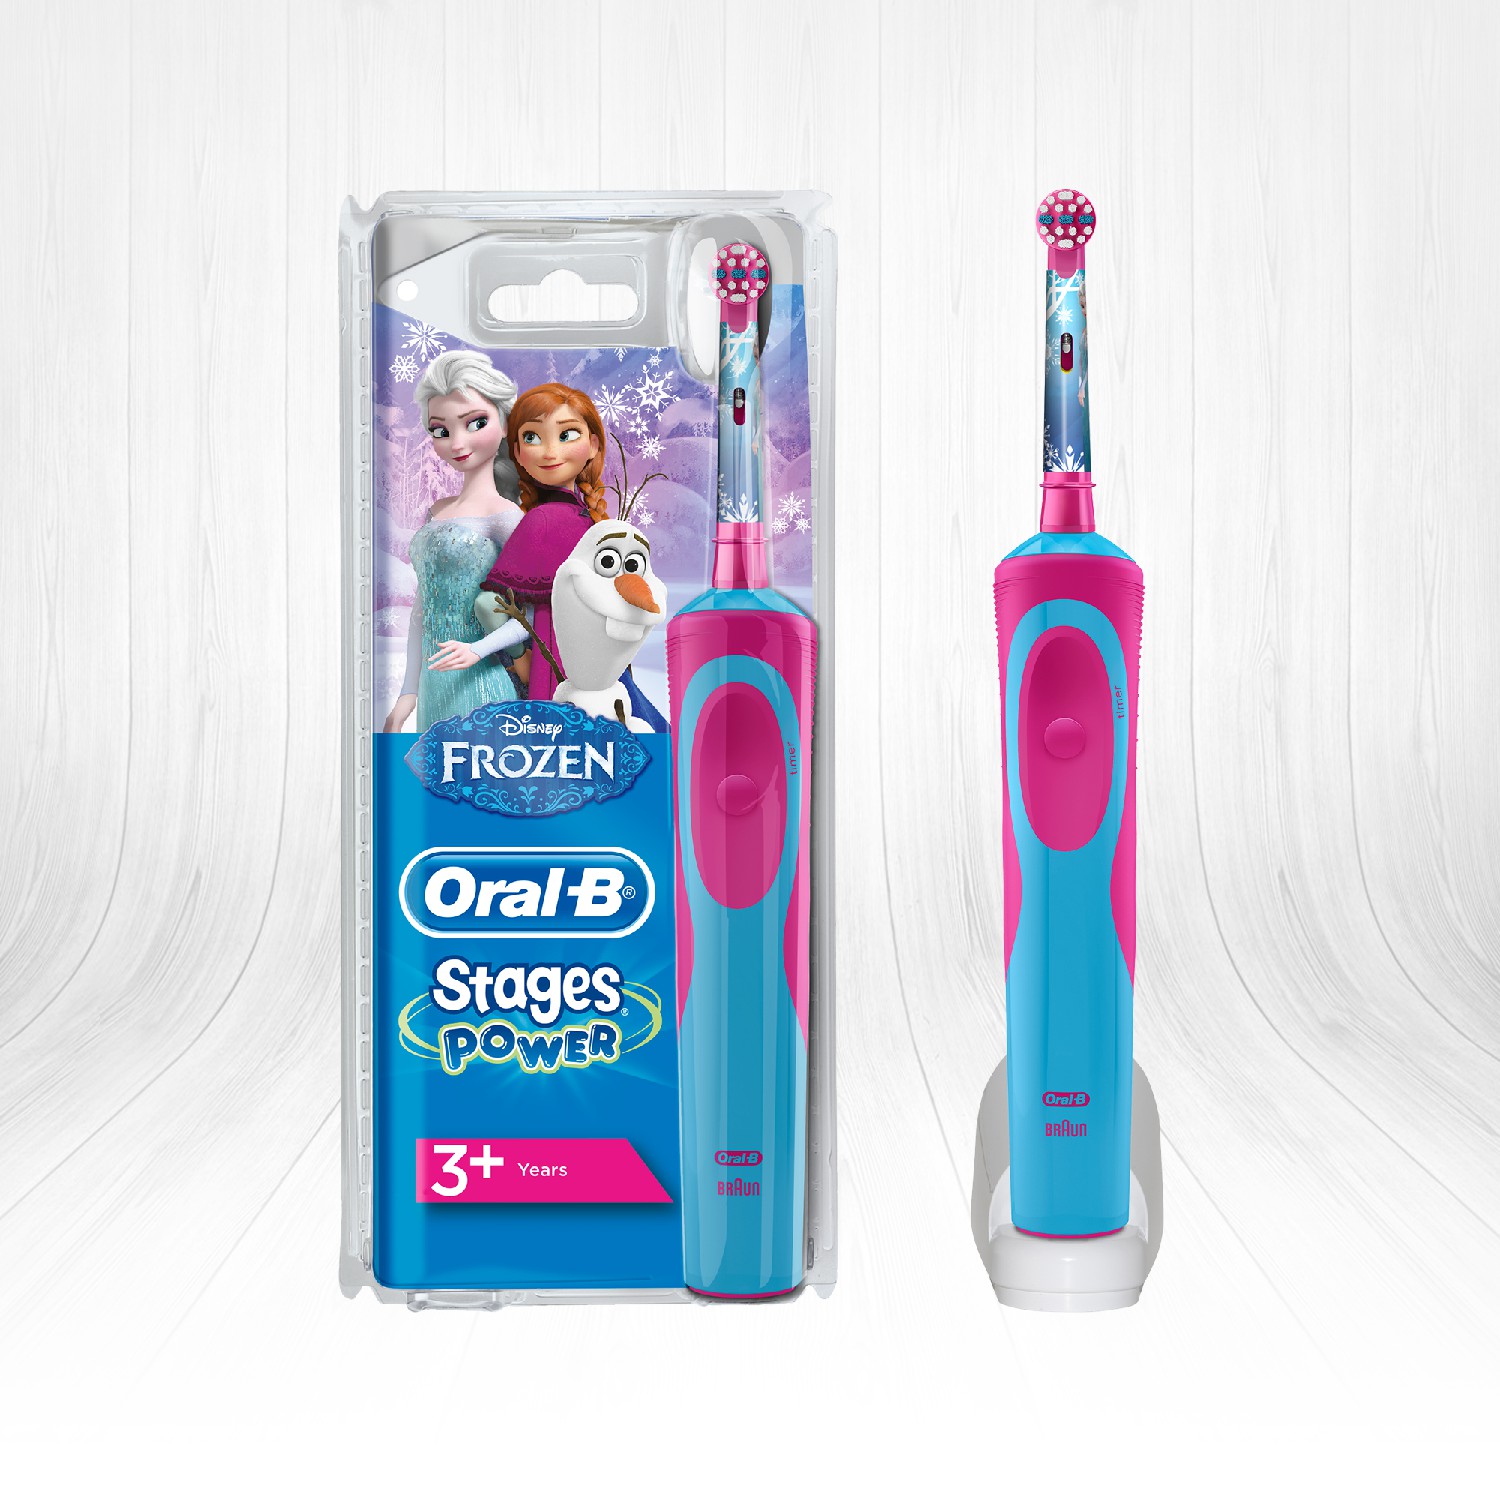 OralB Çocuklar İçin Şarj Edilebilir Diş Fırçası Frozen Özel Seri